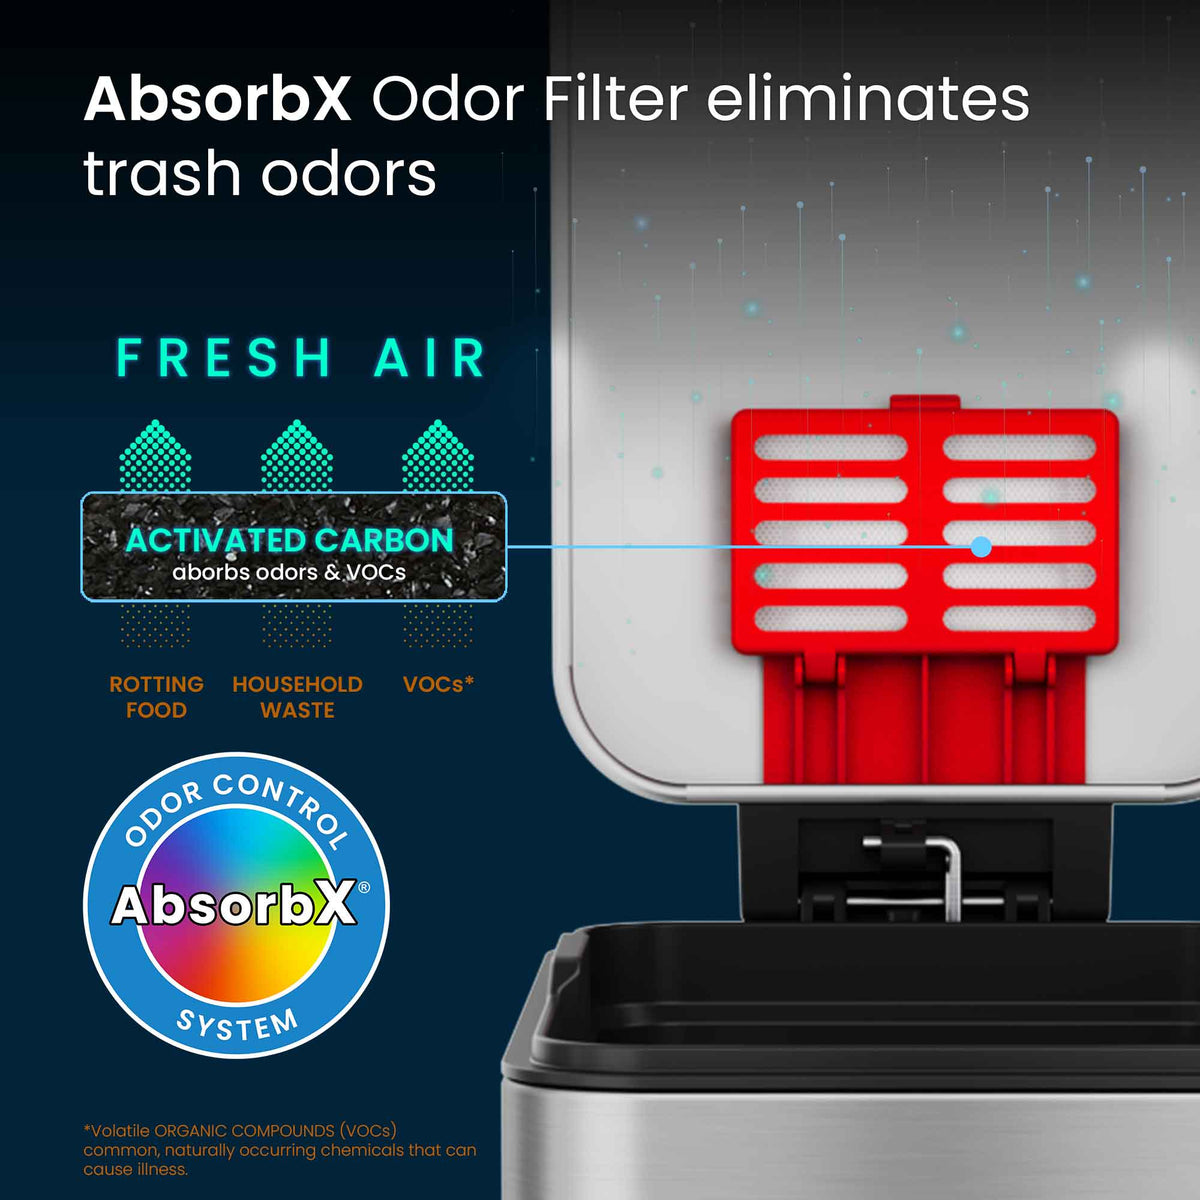 3 Gallon / 11.4 Liter SoftStep Slim Step Pedal Trash Can AbsorbX Odor Filter eliminates trash odors